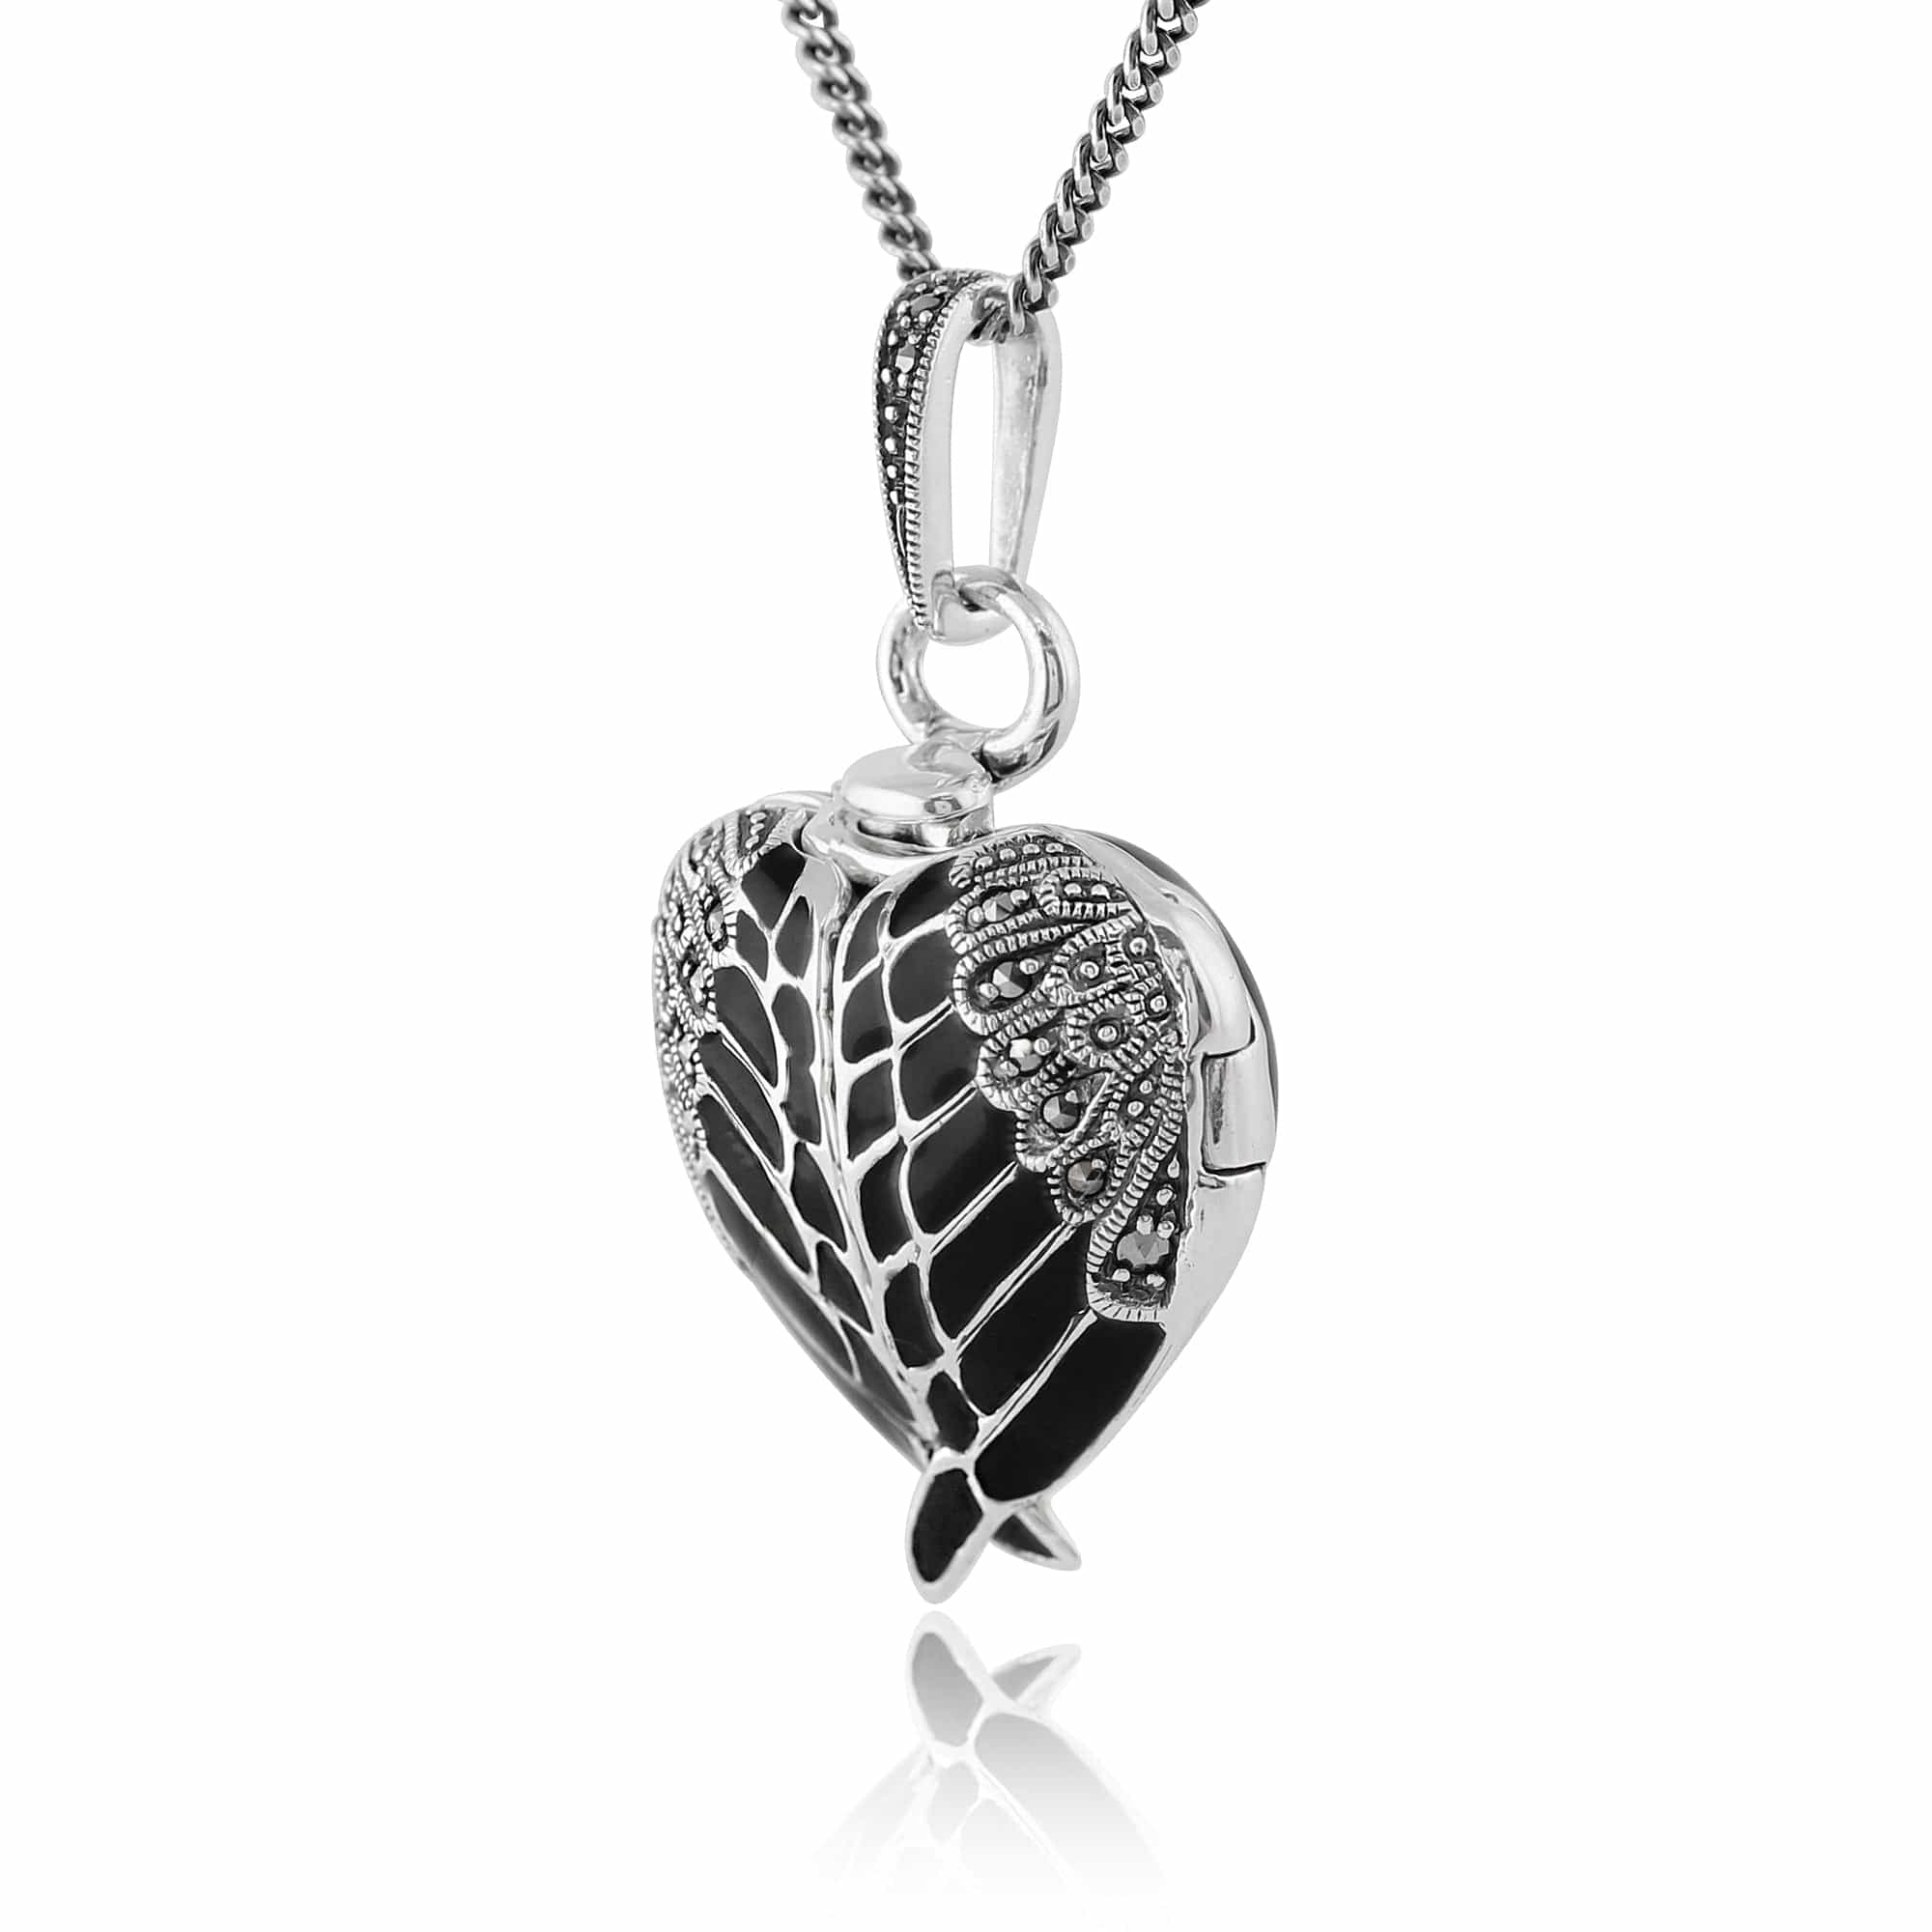 214N583501925 Art Nouveau Style Round Marcasite & Black Enamel Angel Wing Heart Locket on Chain in 925 Sterling Silver 2